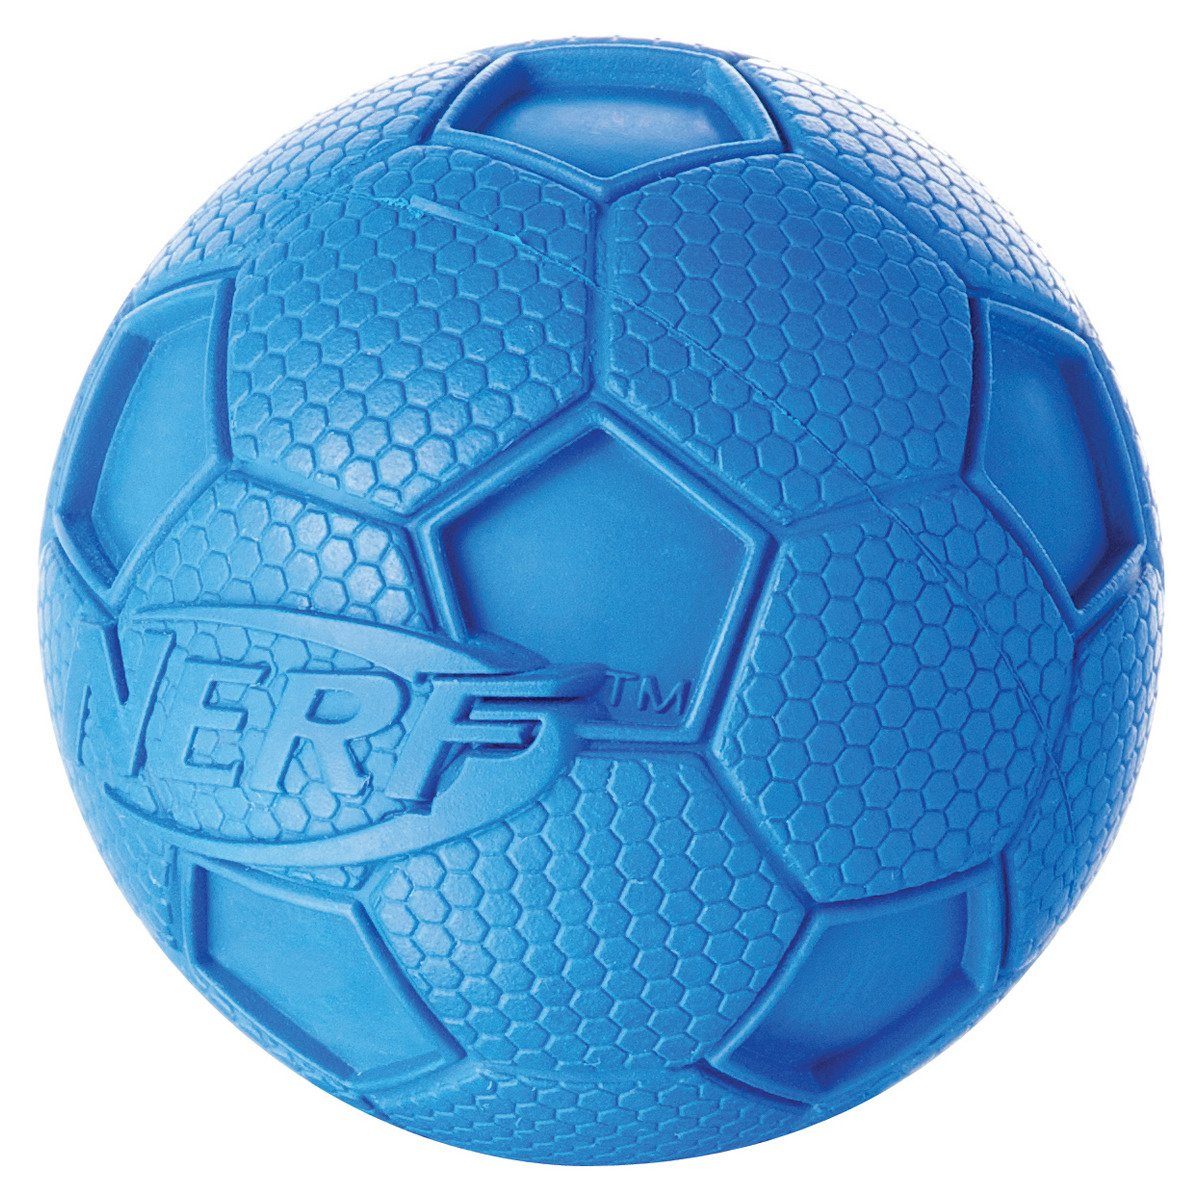 Nerf Dog Spielknochen Fußball mit Quietscher, Größe: M / Durchmesser: 7,3 cm / Farbe: blau oder grün